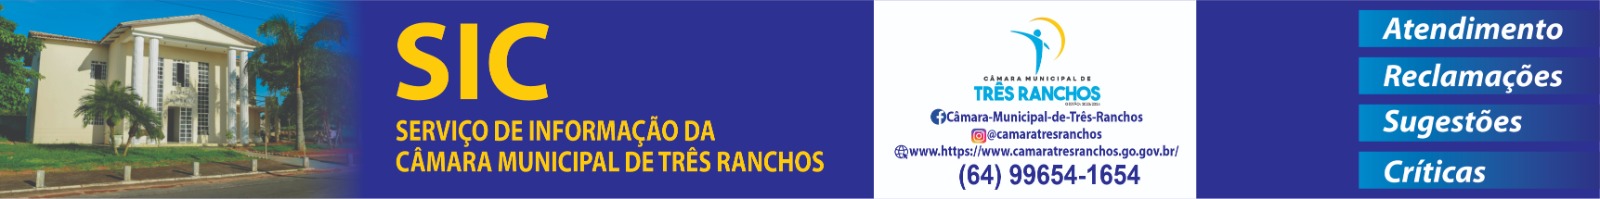 Campanha Camara Municipal de Tres Ranchos Outubro 728 x 90